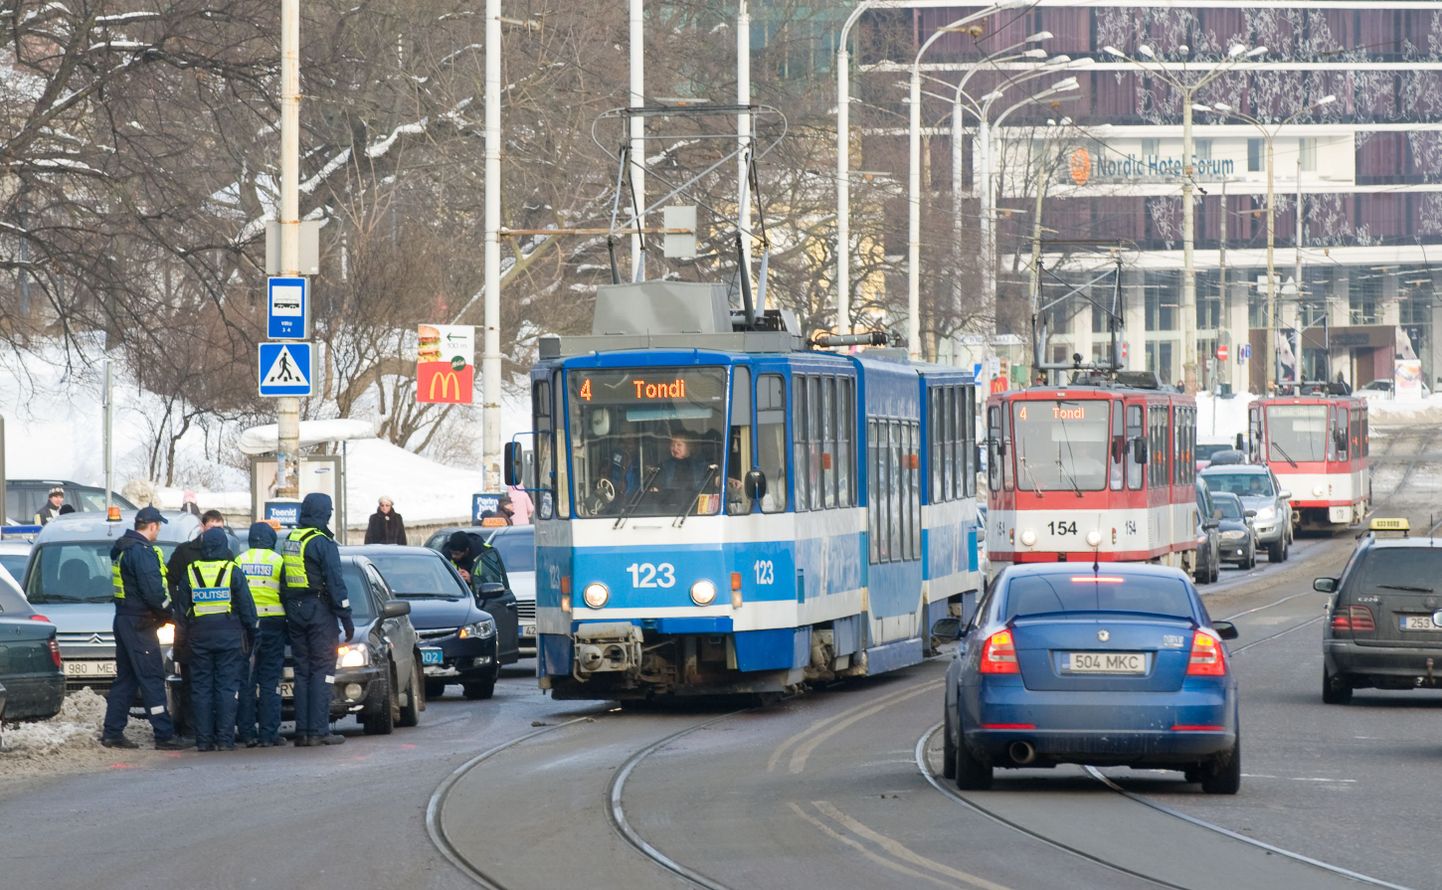 Liiklusõnnetus Tallinnas Pärnu maanteel Viru trammipeatuse juures põhjustas ummiku.